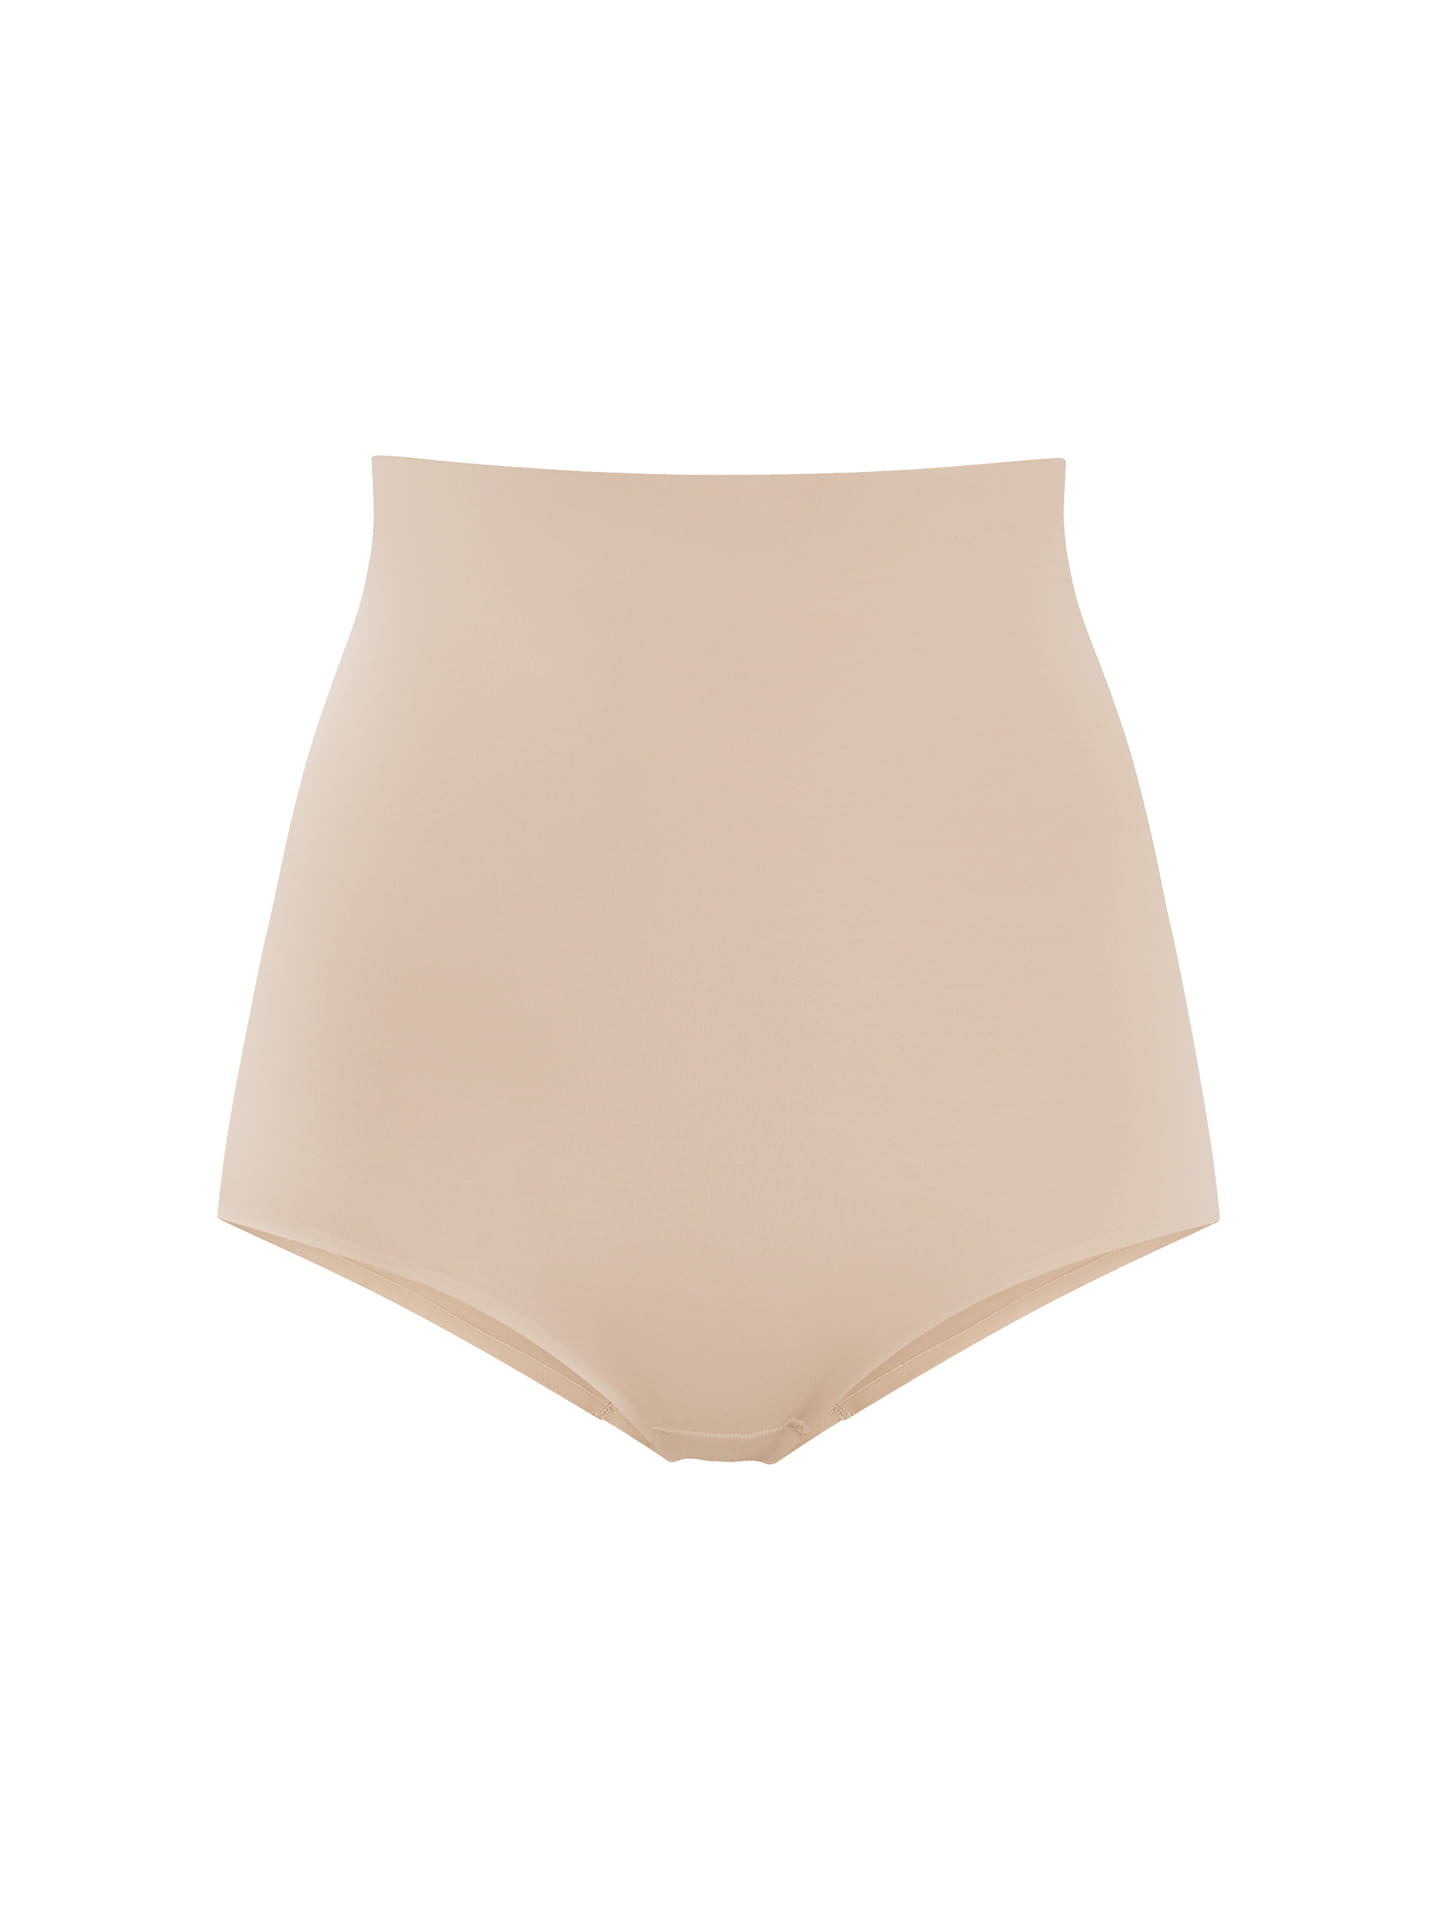 Fit control underwear in beige, 6.99€